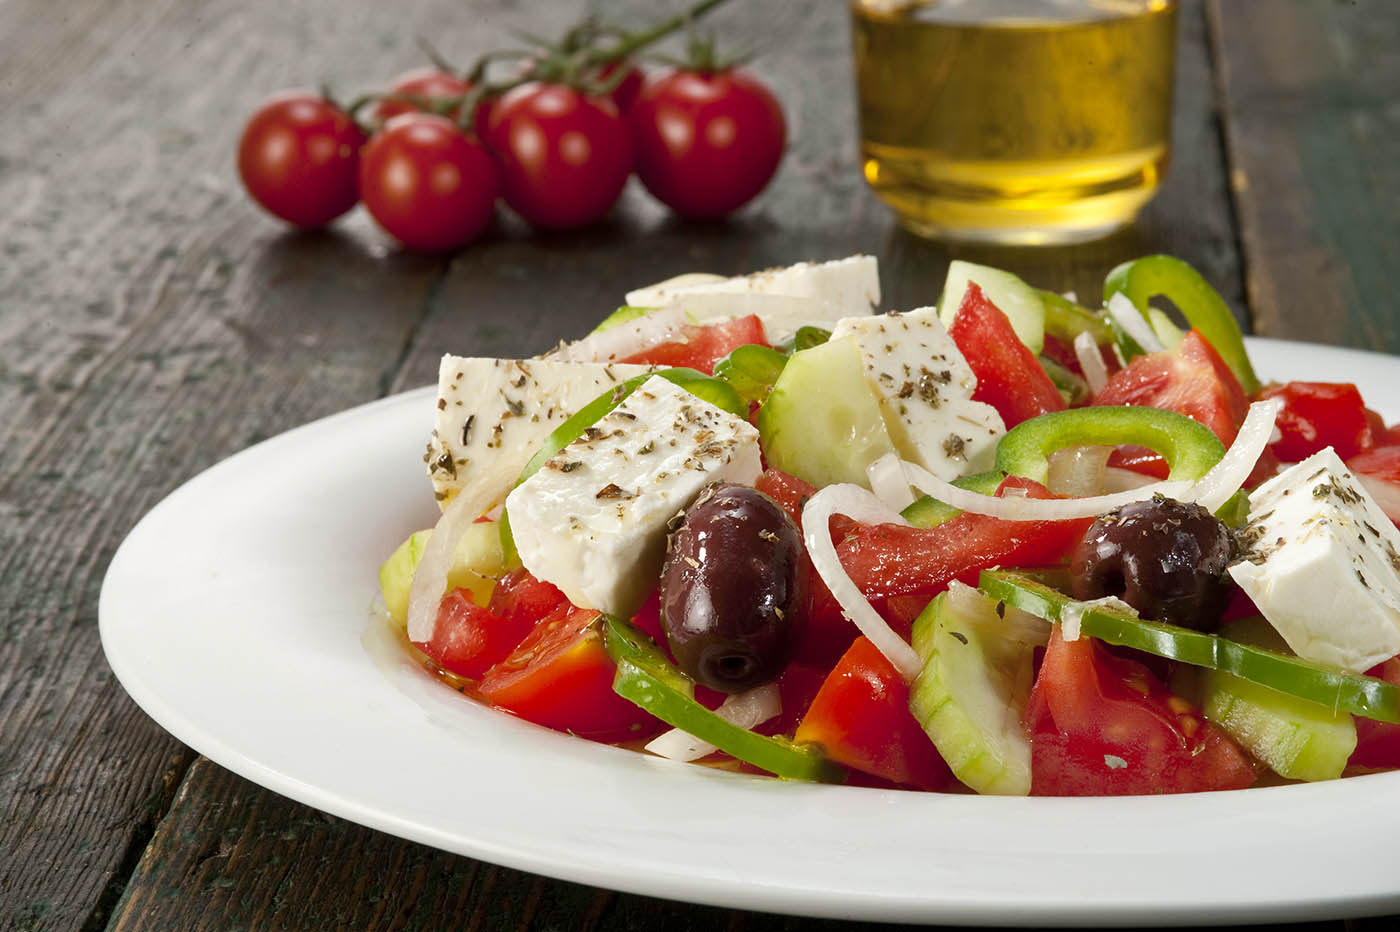 FAZ για χωριάτικη σαλάτα: «Μία κλασσική δημιουργία της ελληνικής κουζίνας»